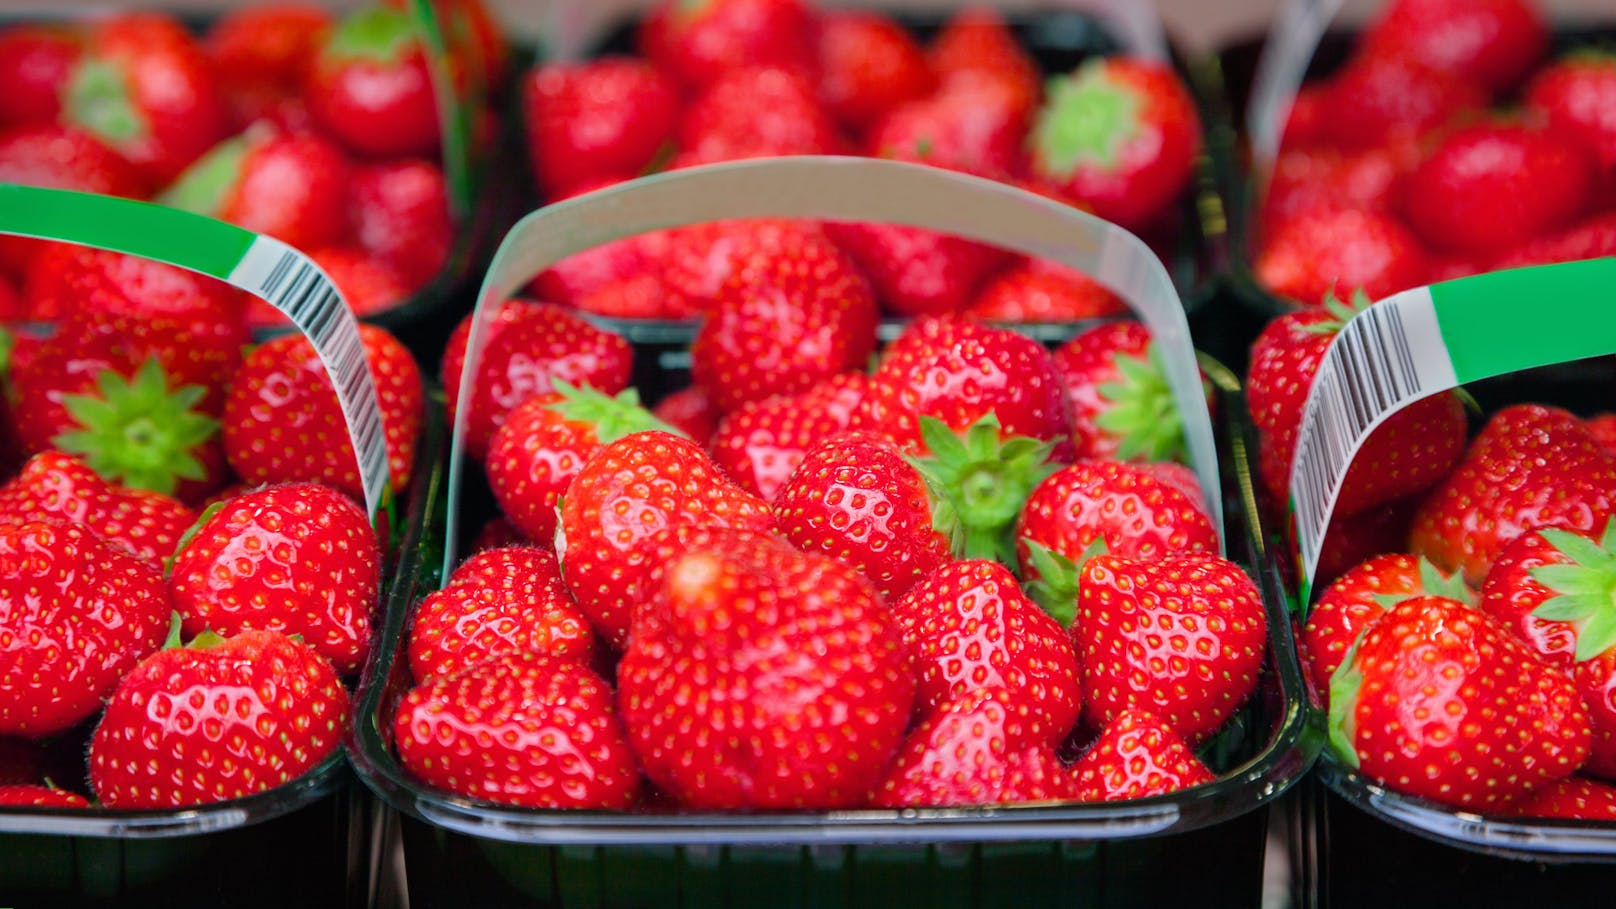 Erdbeeren gehören zum Sommer einfach dazu. Besonders gut schmecken sie, wenn sie aus der Region kommen.